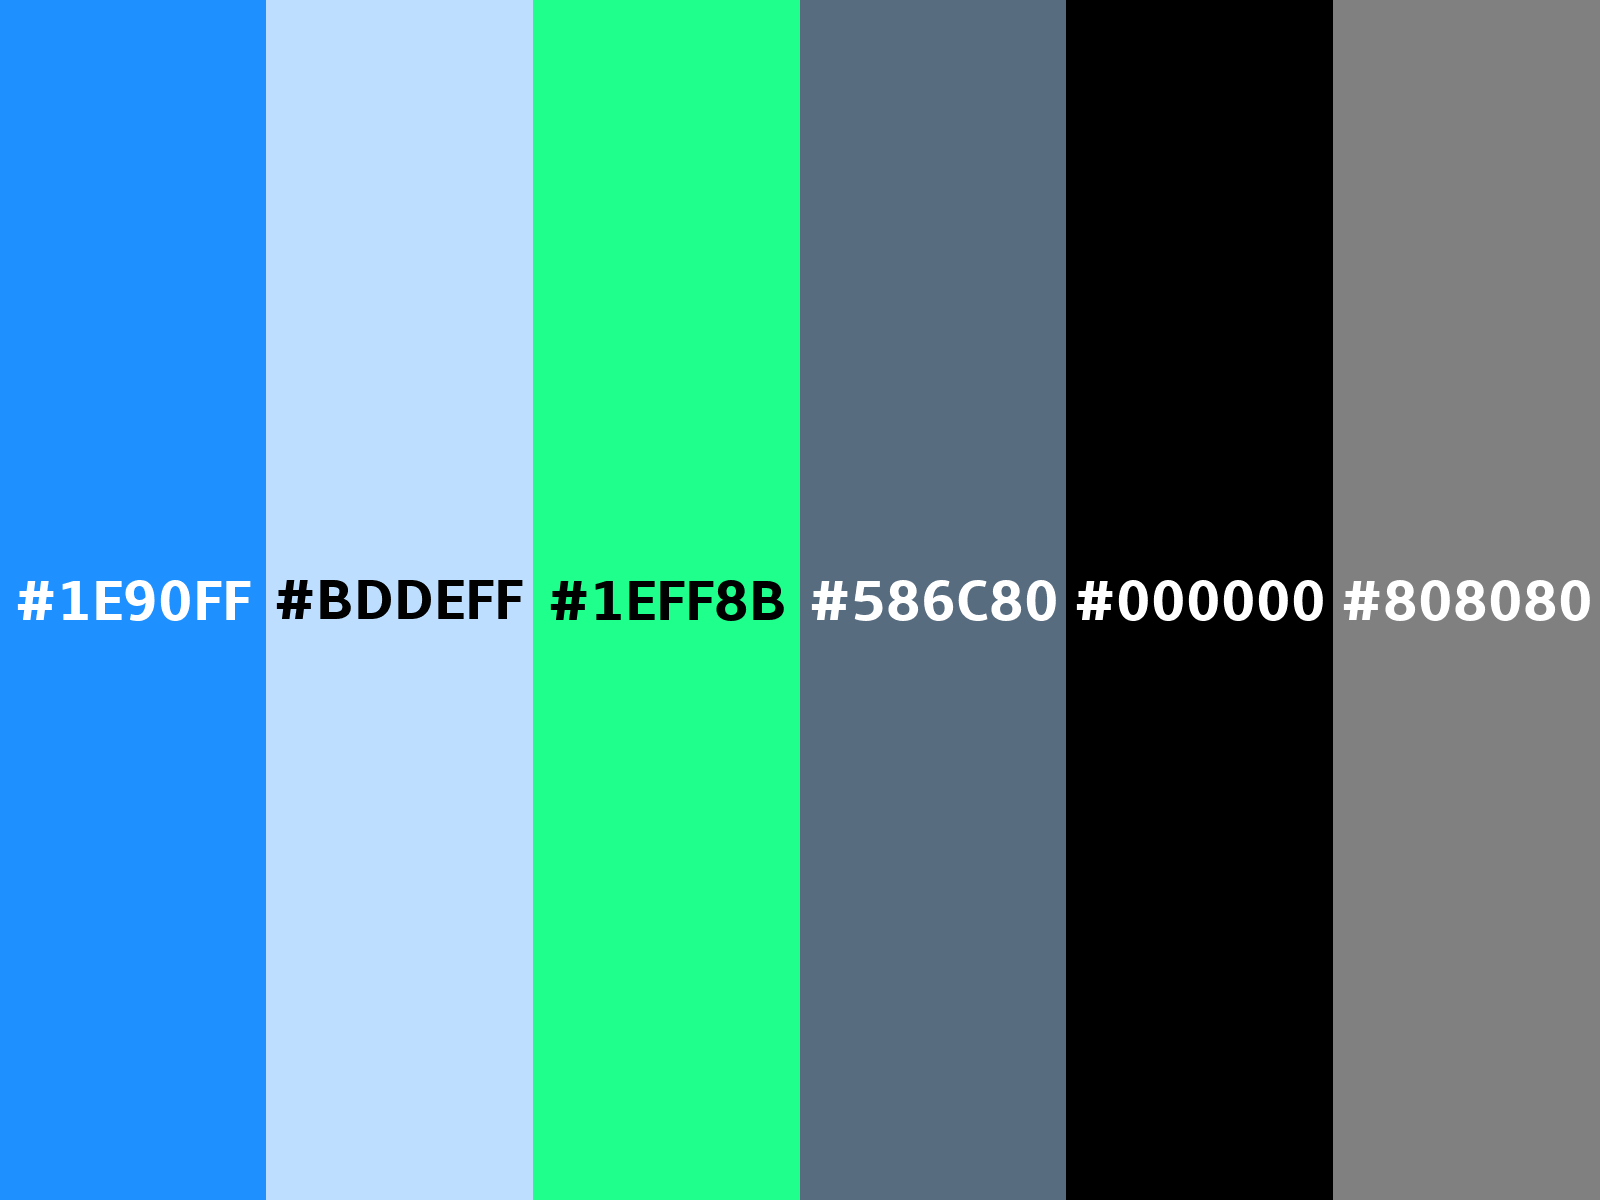 17bdff - Dodger Blue - RGB 23, 189, 255 Color Informations